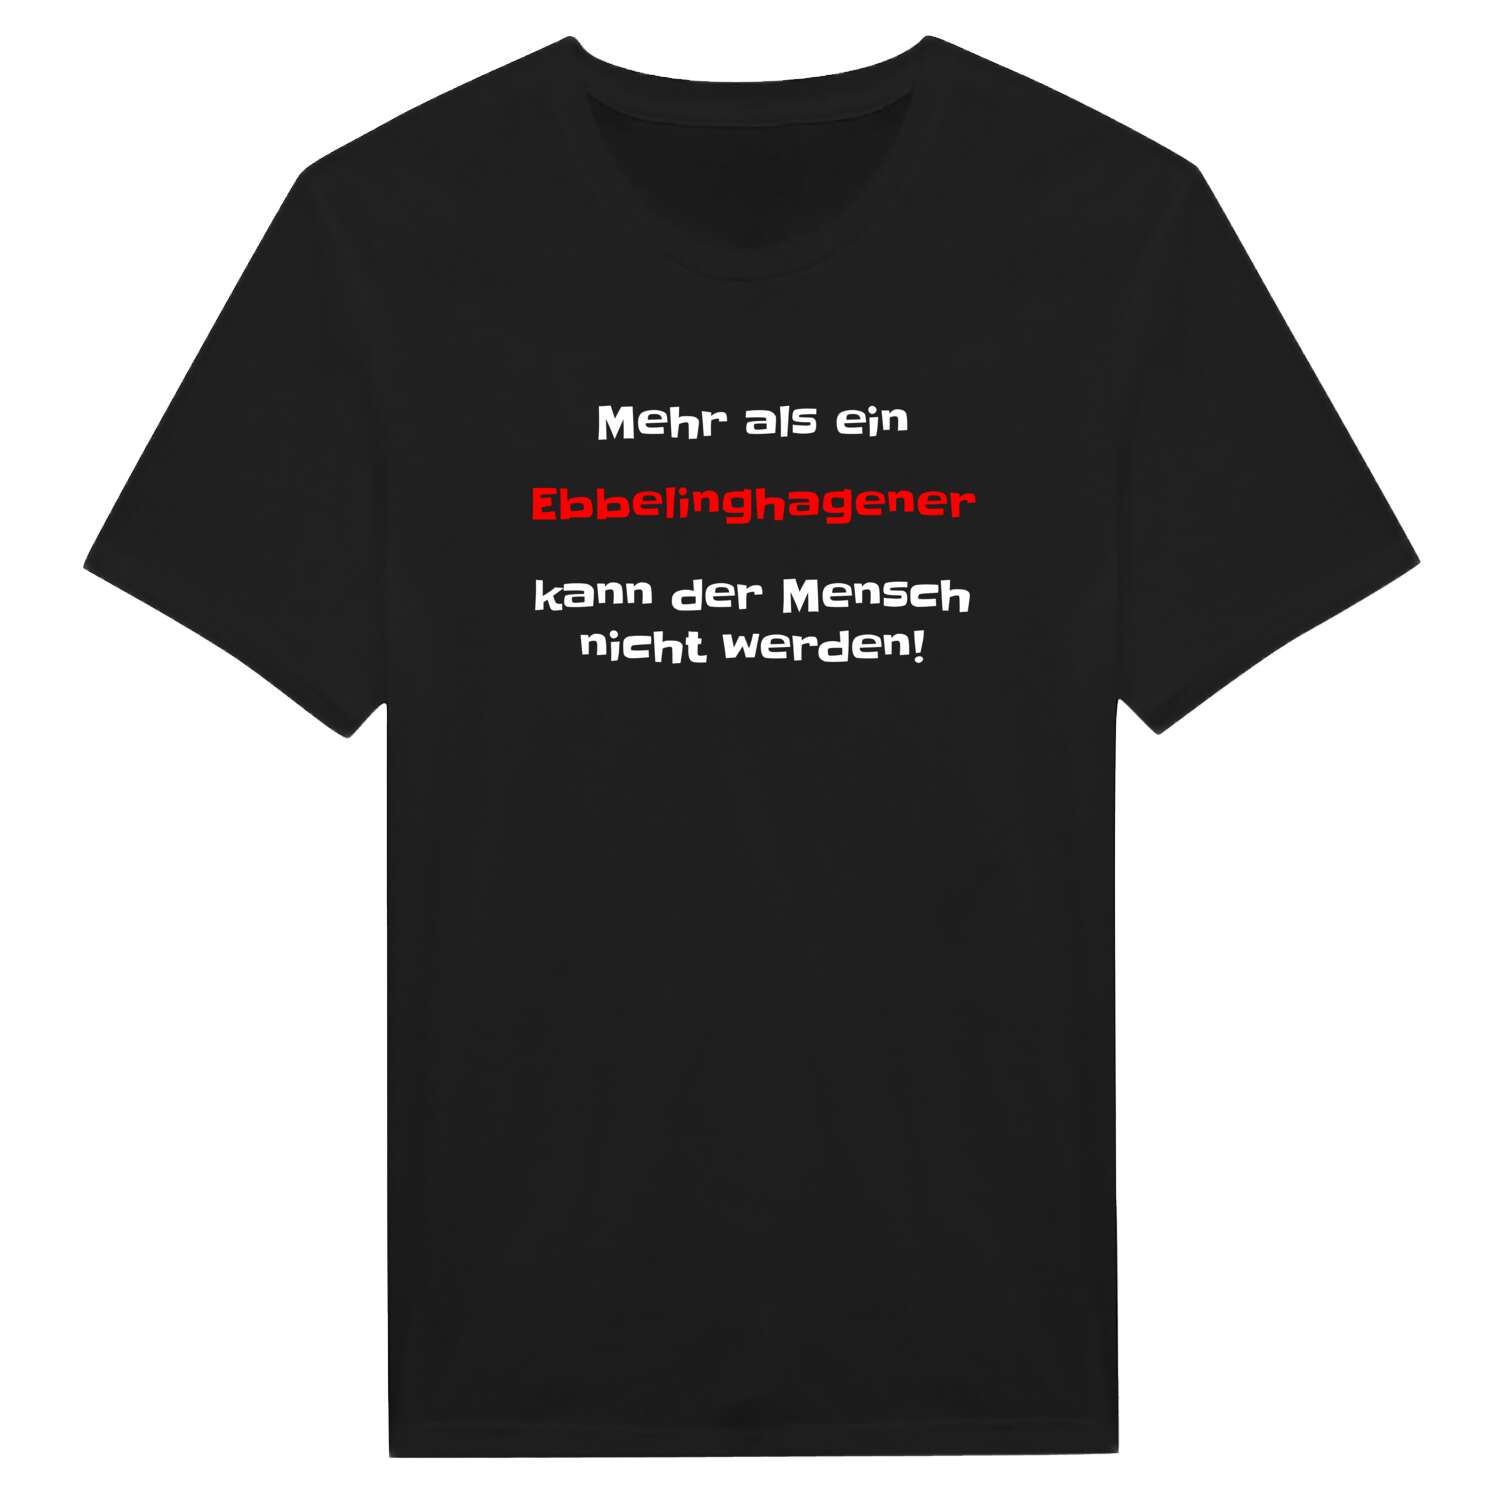 Ebbelinghagen T-Shirt »Mehr als ein«